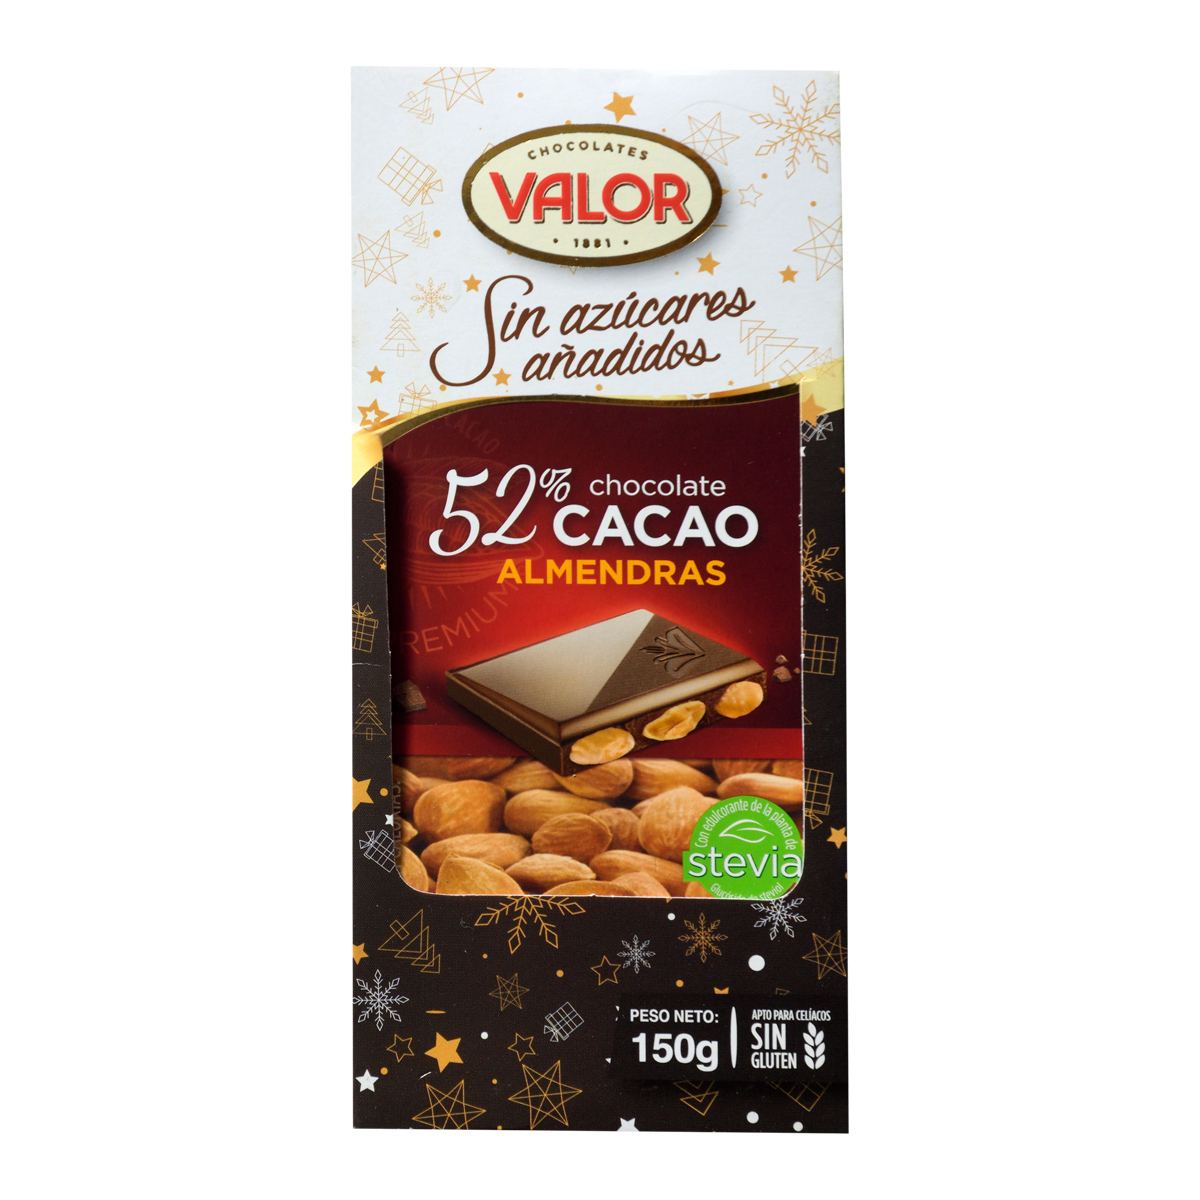 Chocolate Puro Valor con Almendras 150g - 919396